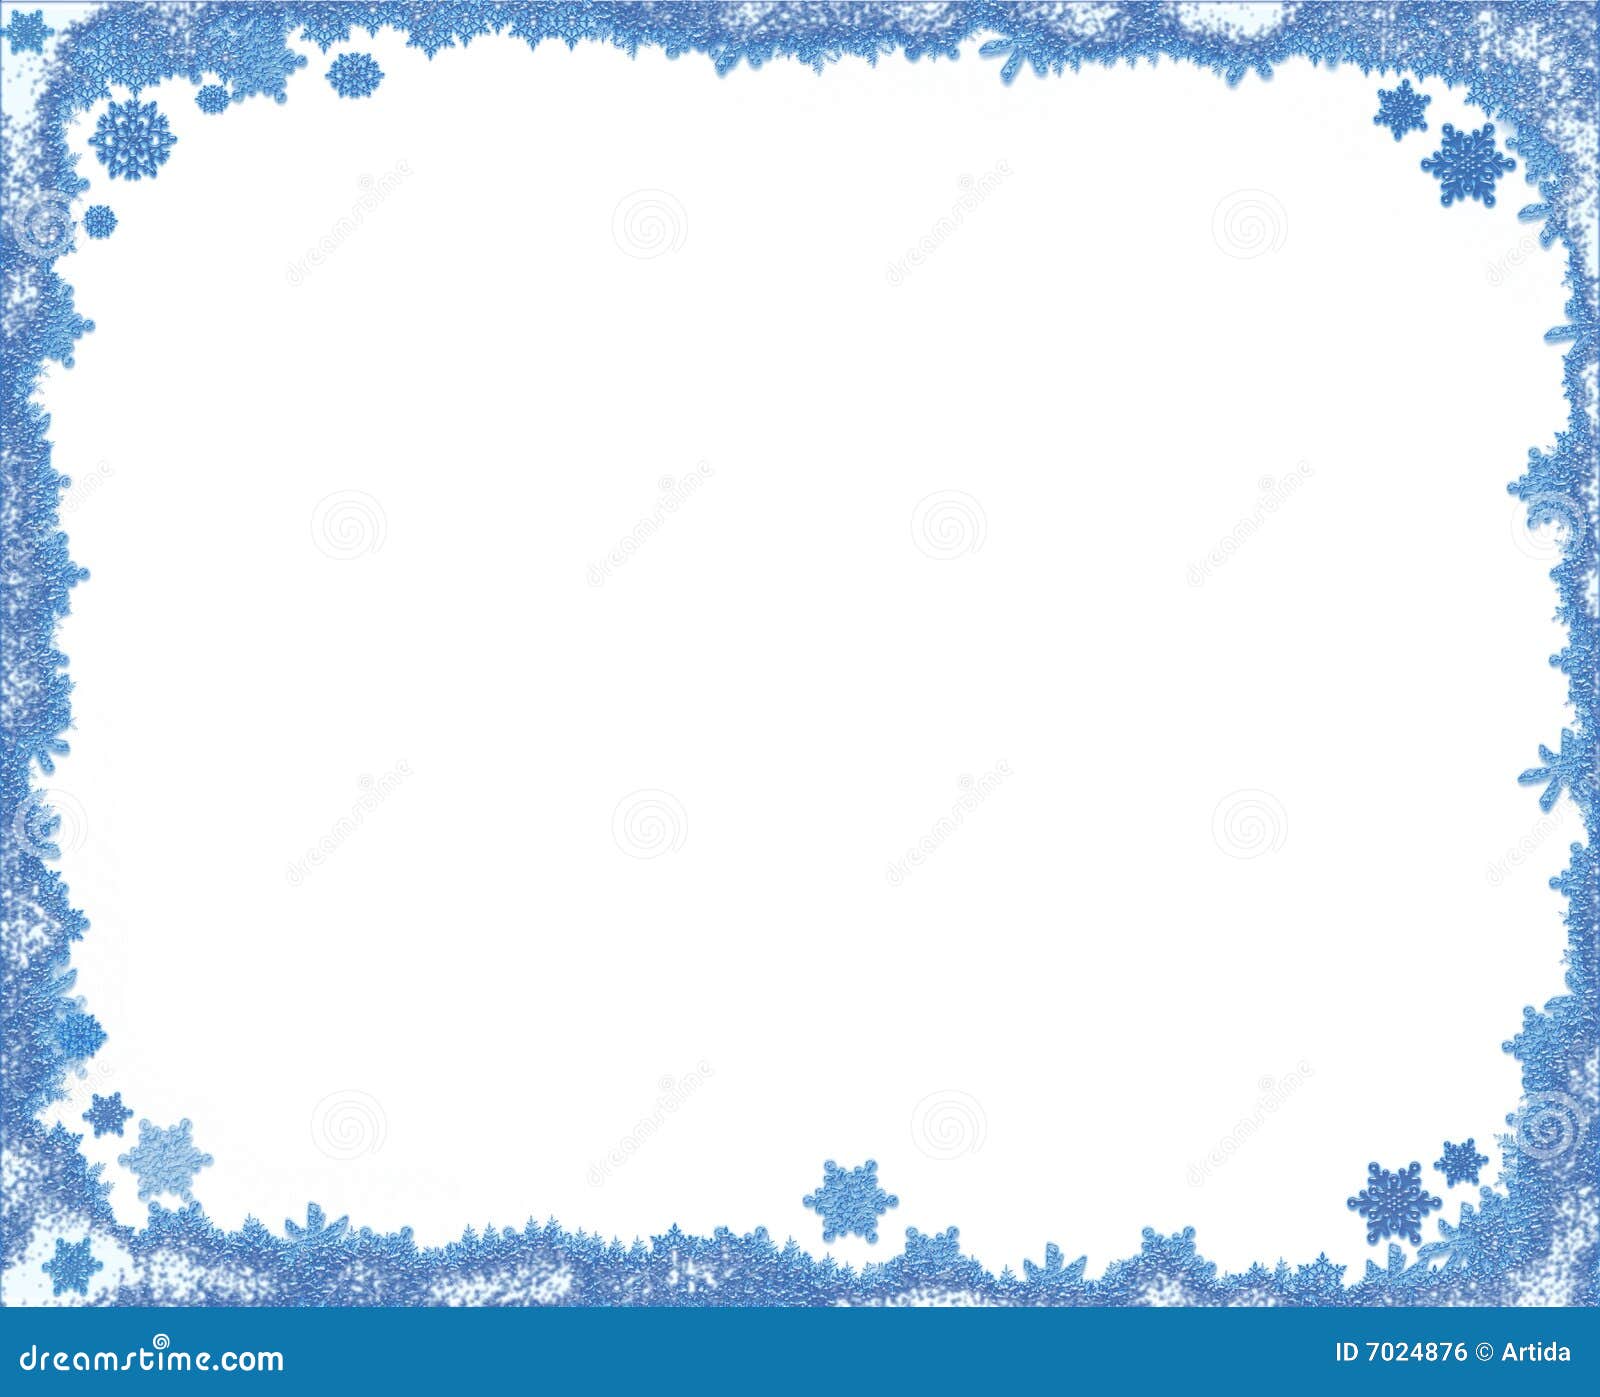 Рамка из голубых снежинок